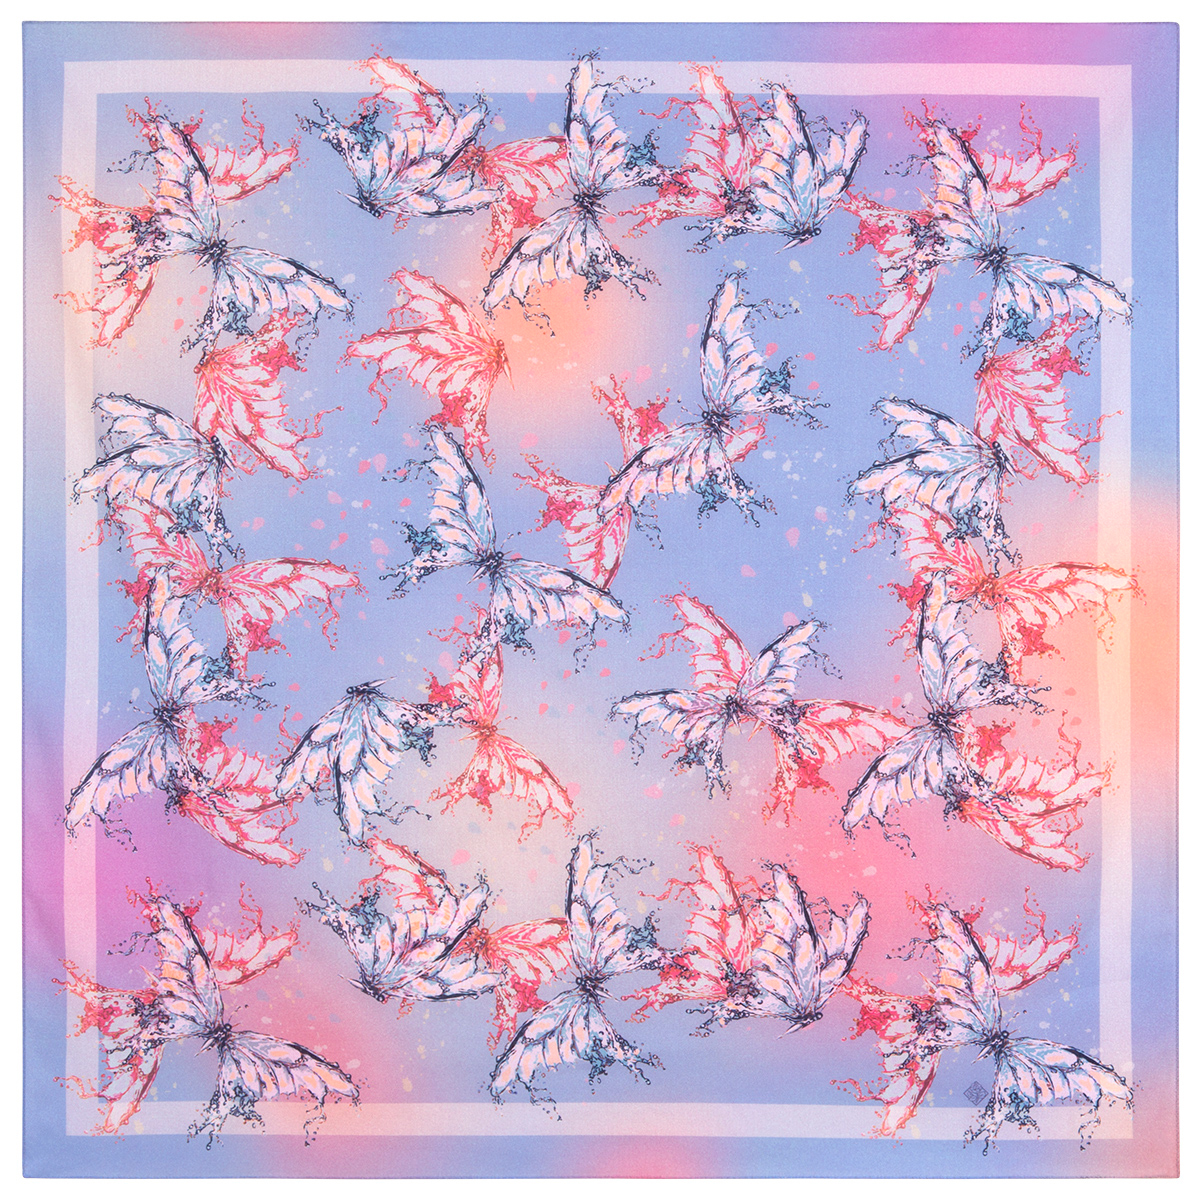 Платок женский Павловопосадский платок 11003 голубой/розовый, 80х80 см